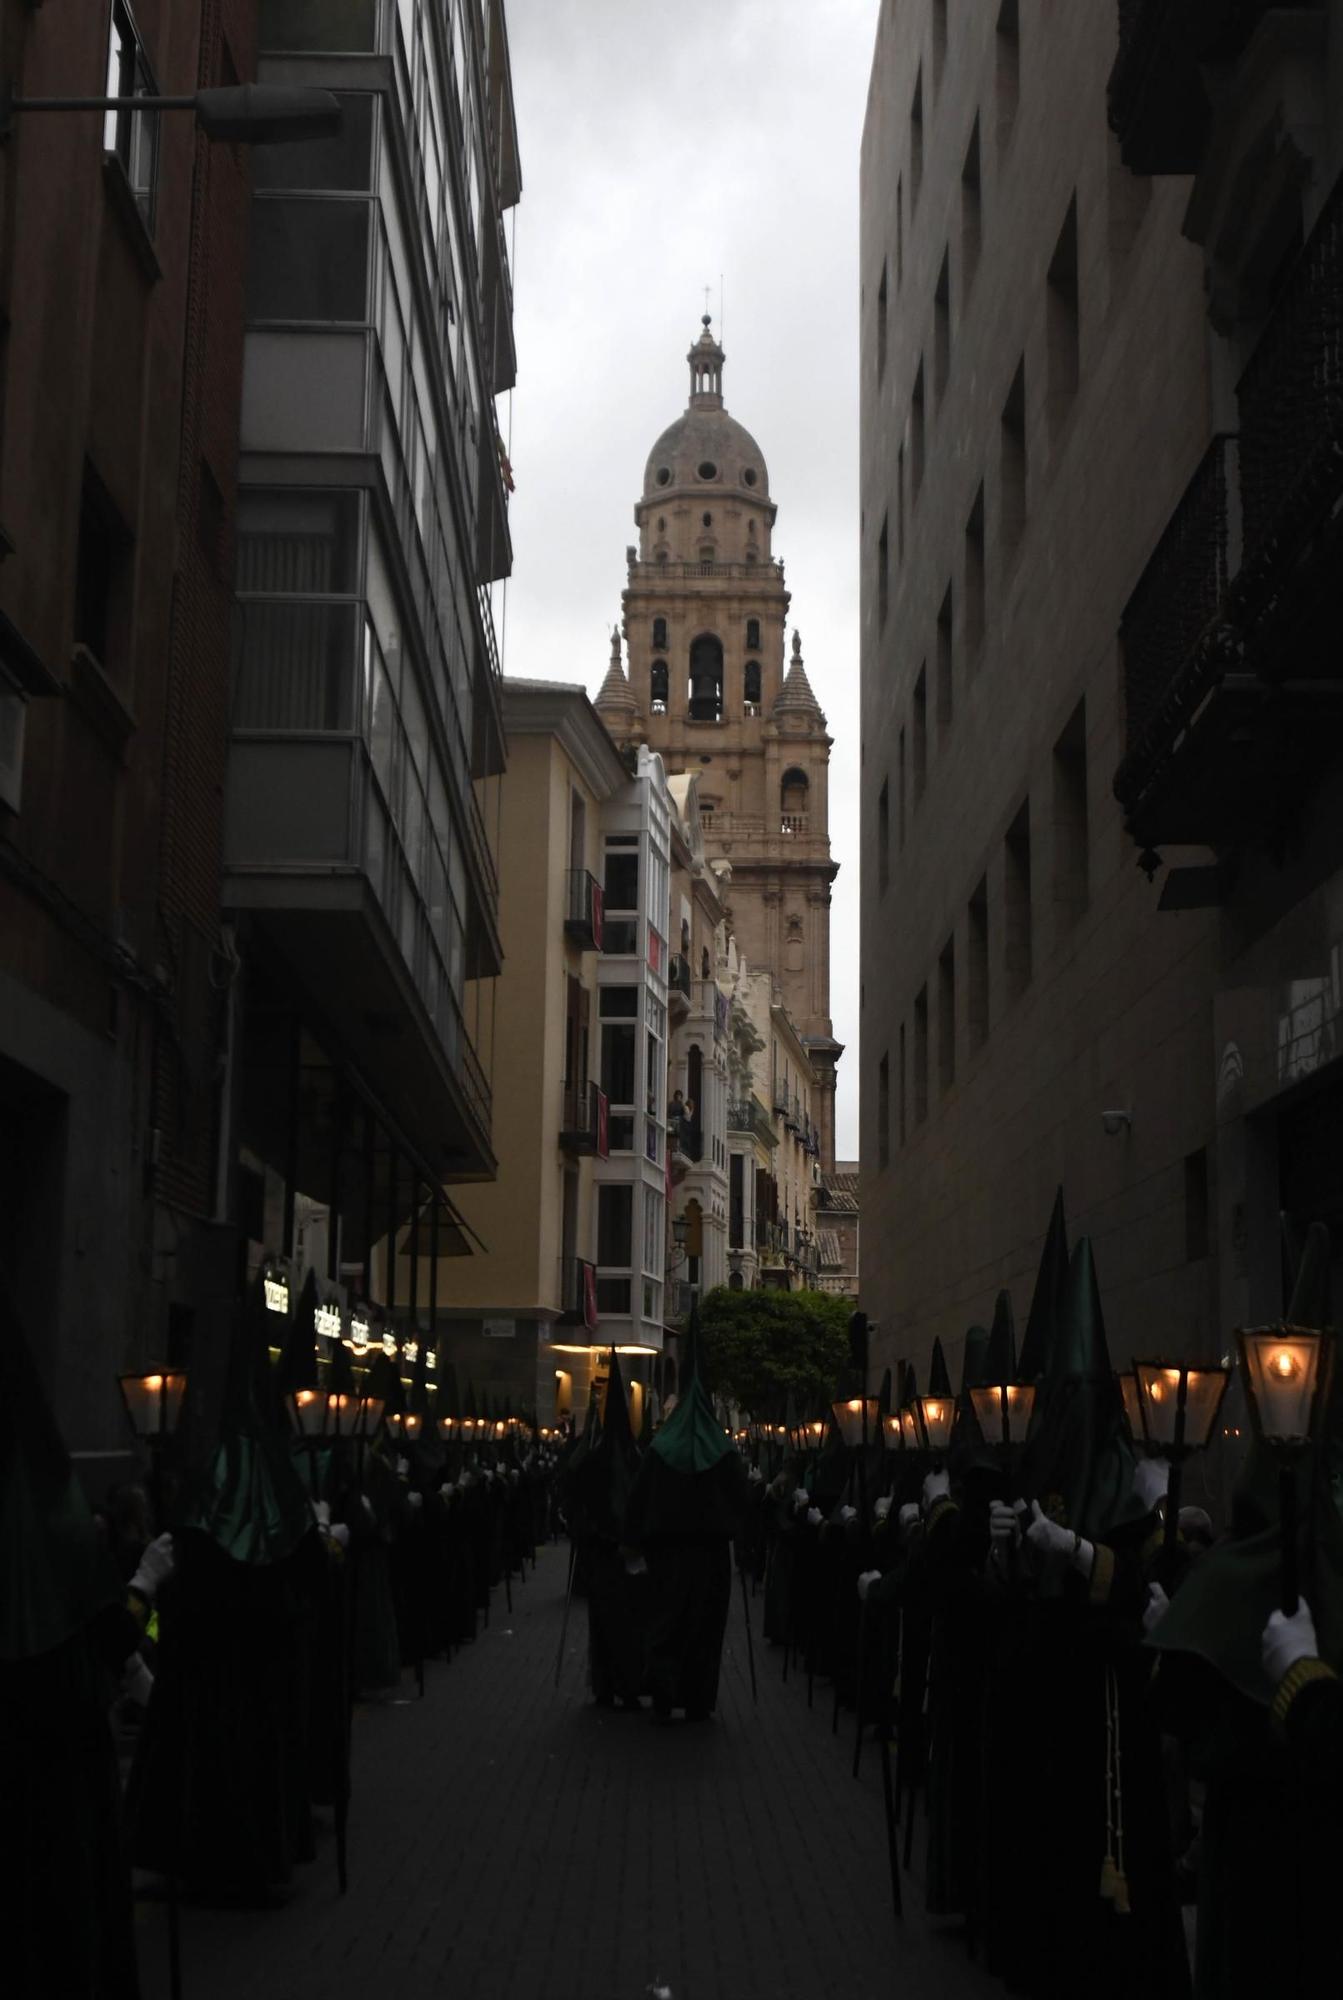 Domingo de Ramos en Murcia